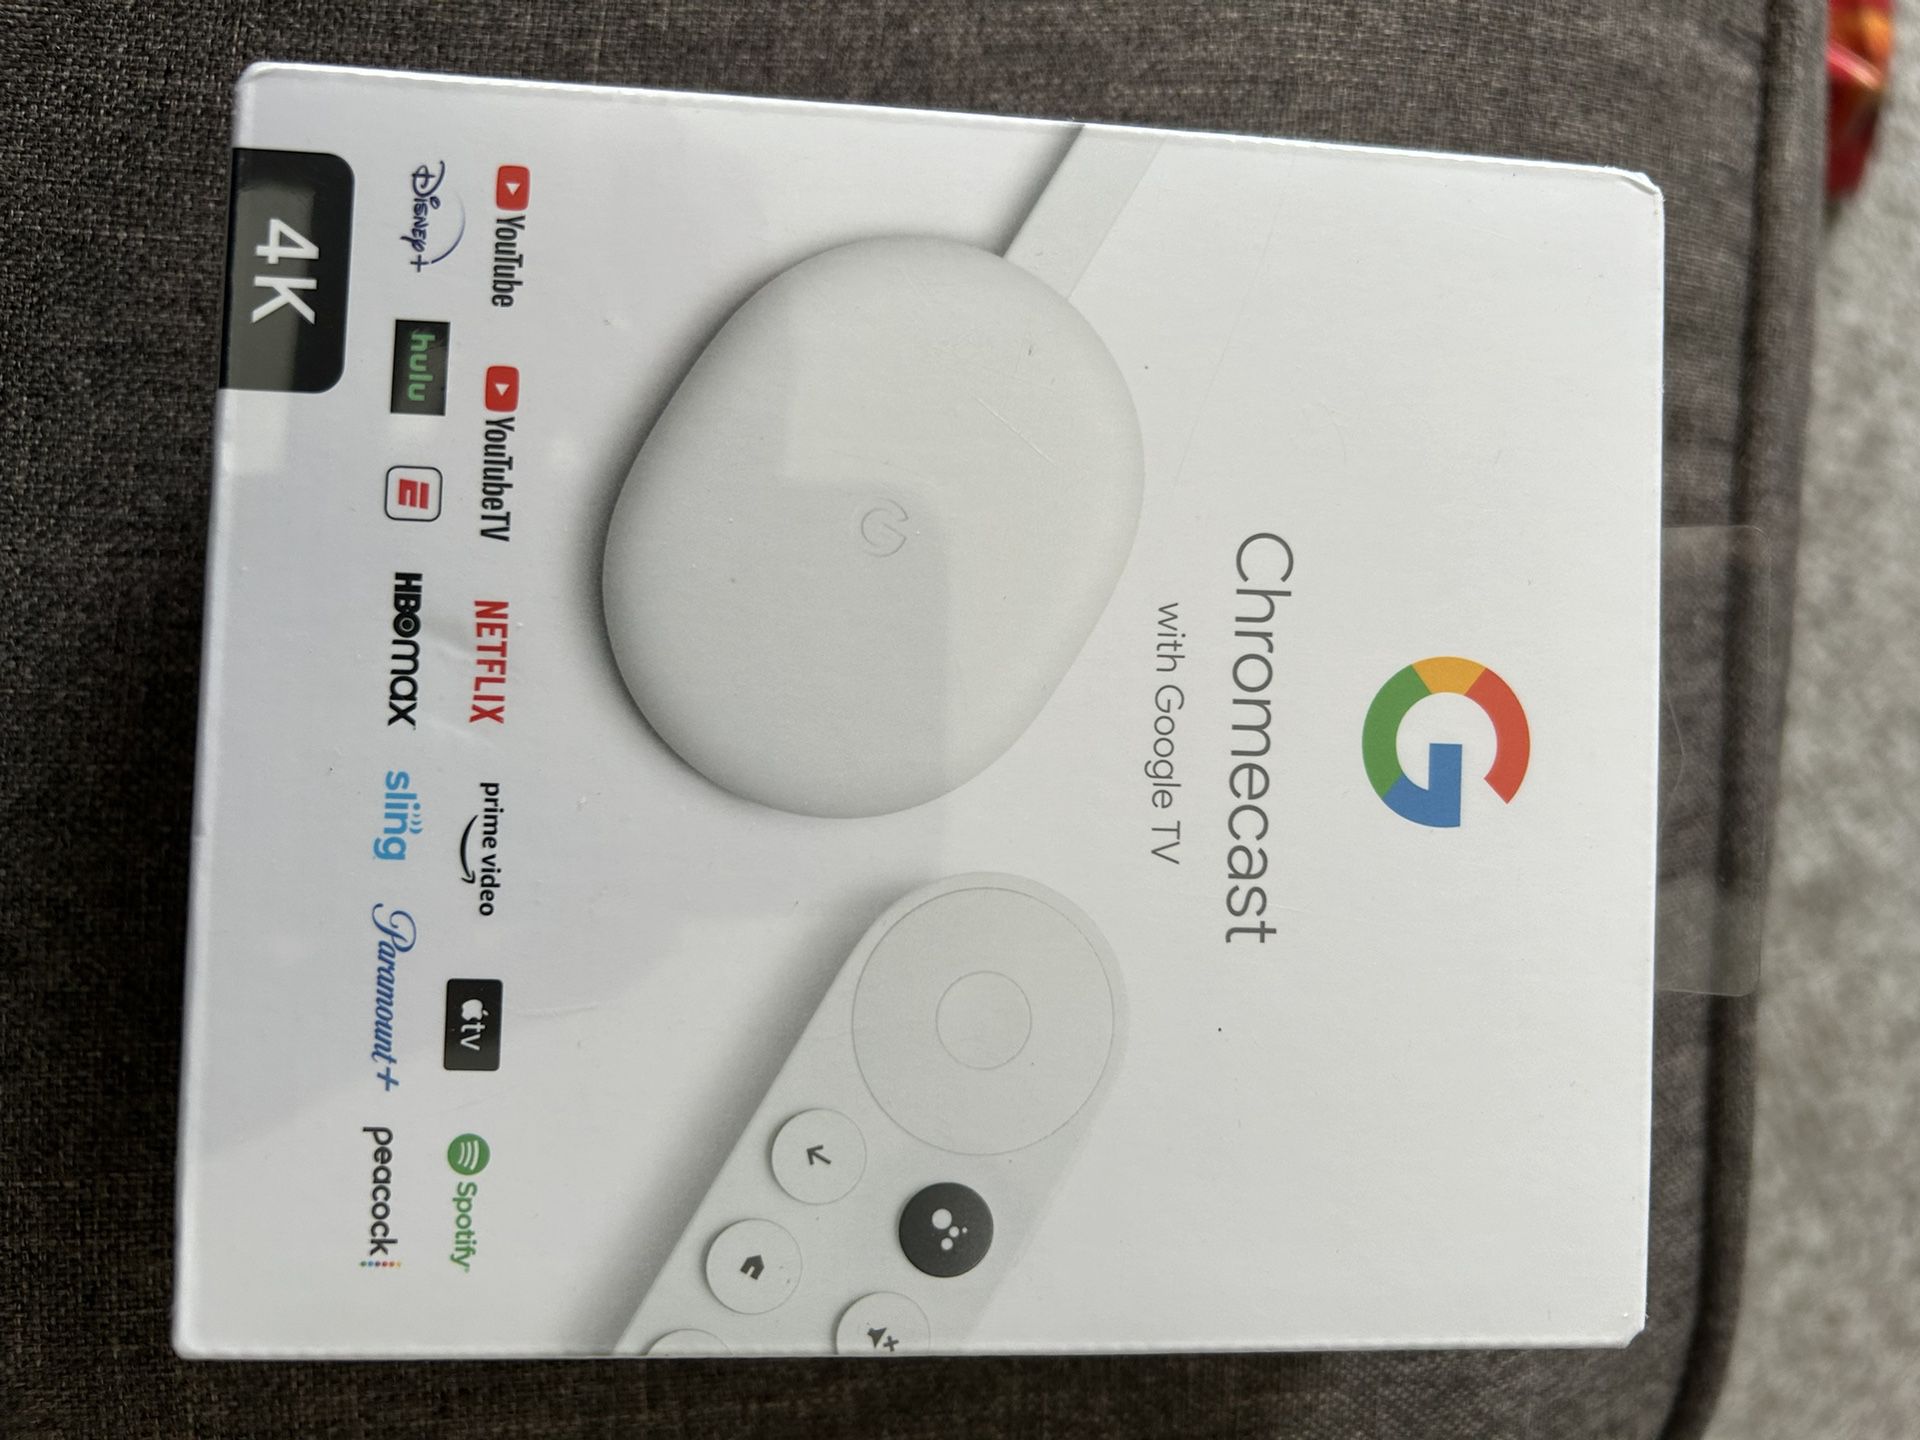 Chrome cast Google 4k